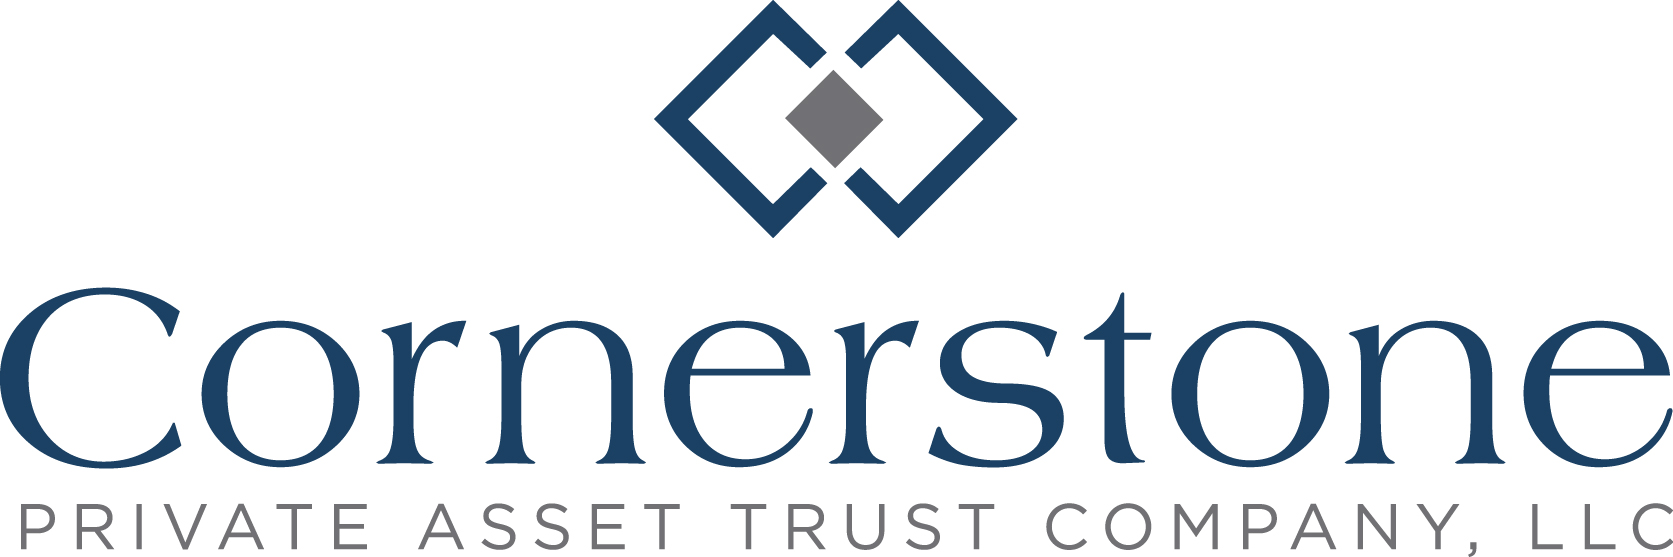 Cornerstone Private Asset Trust